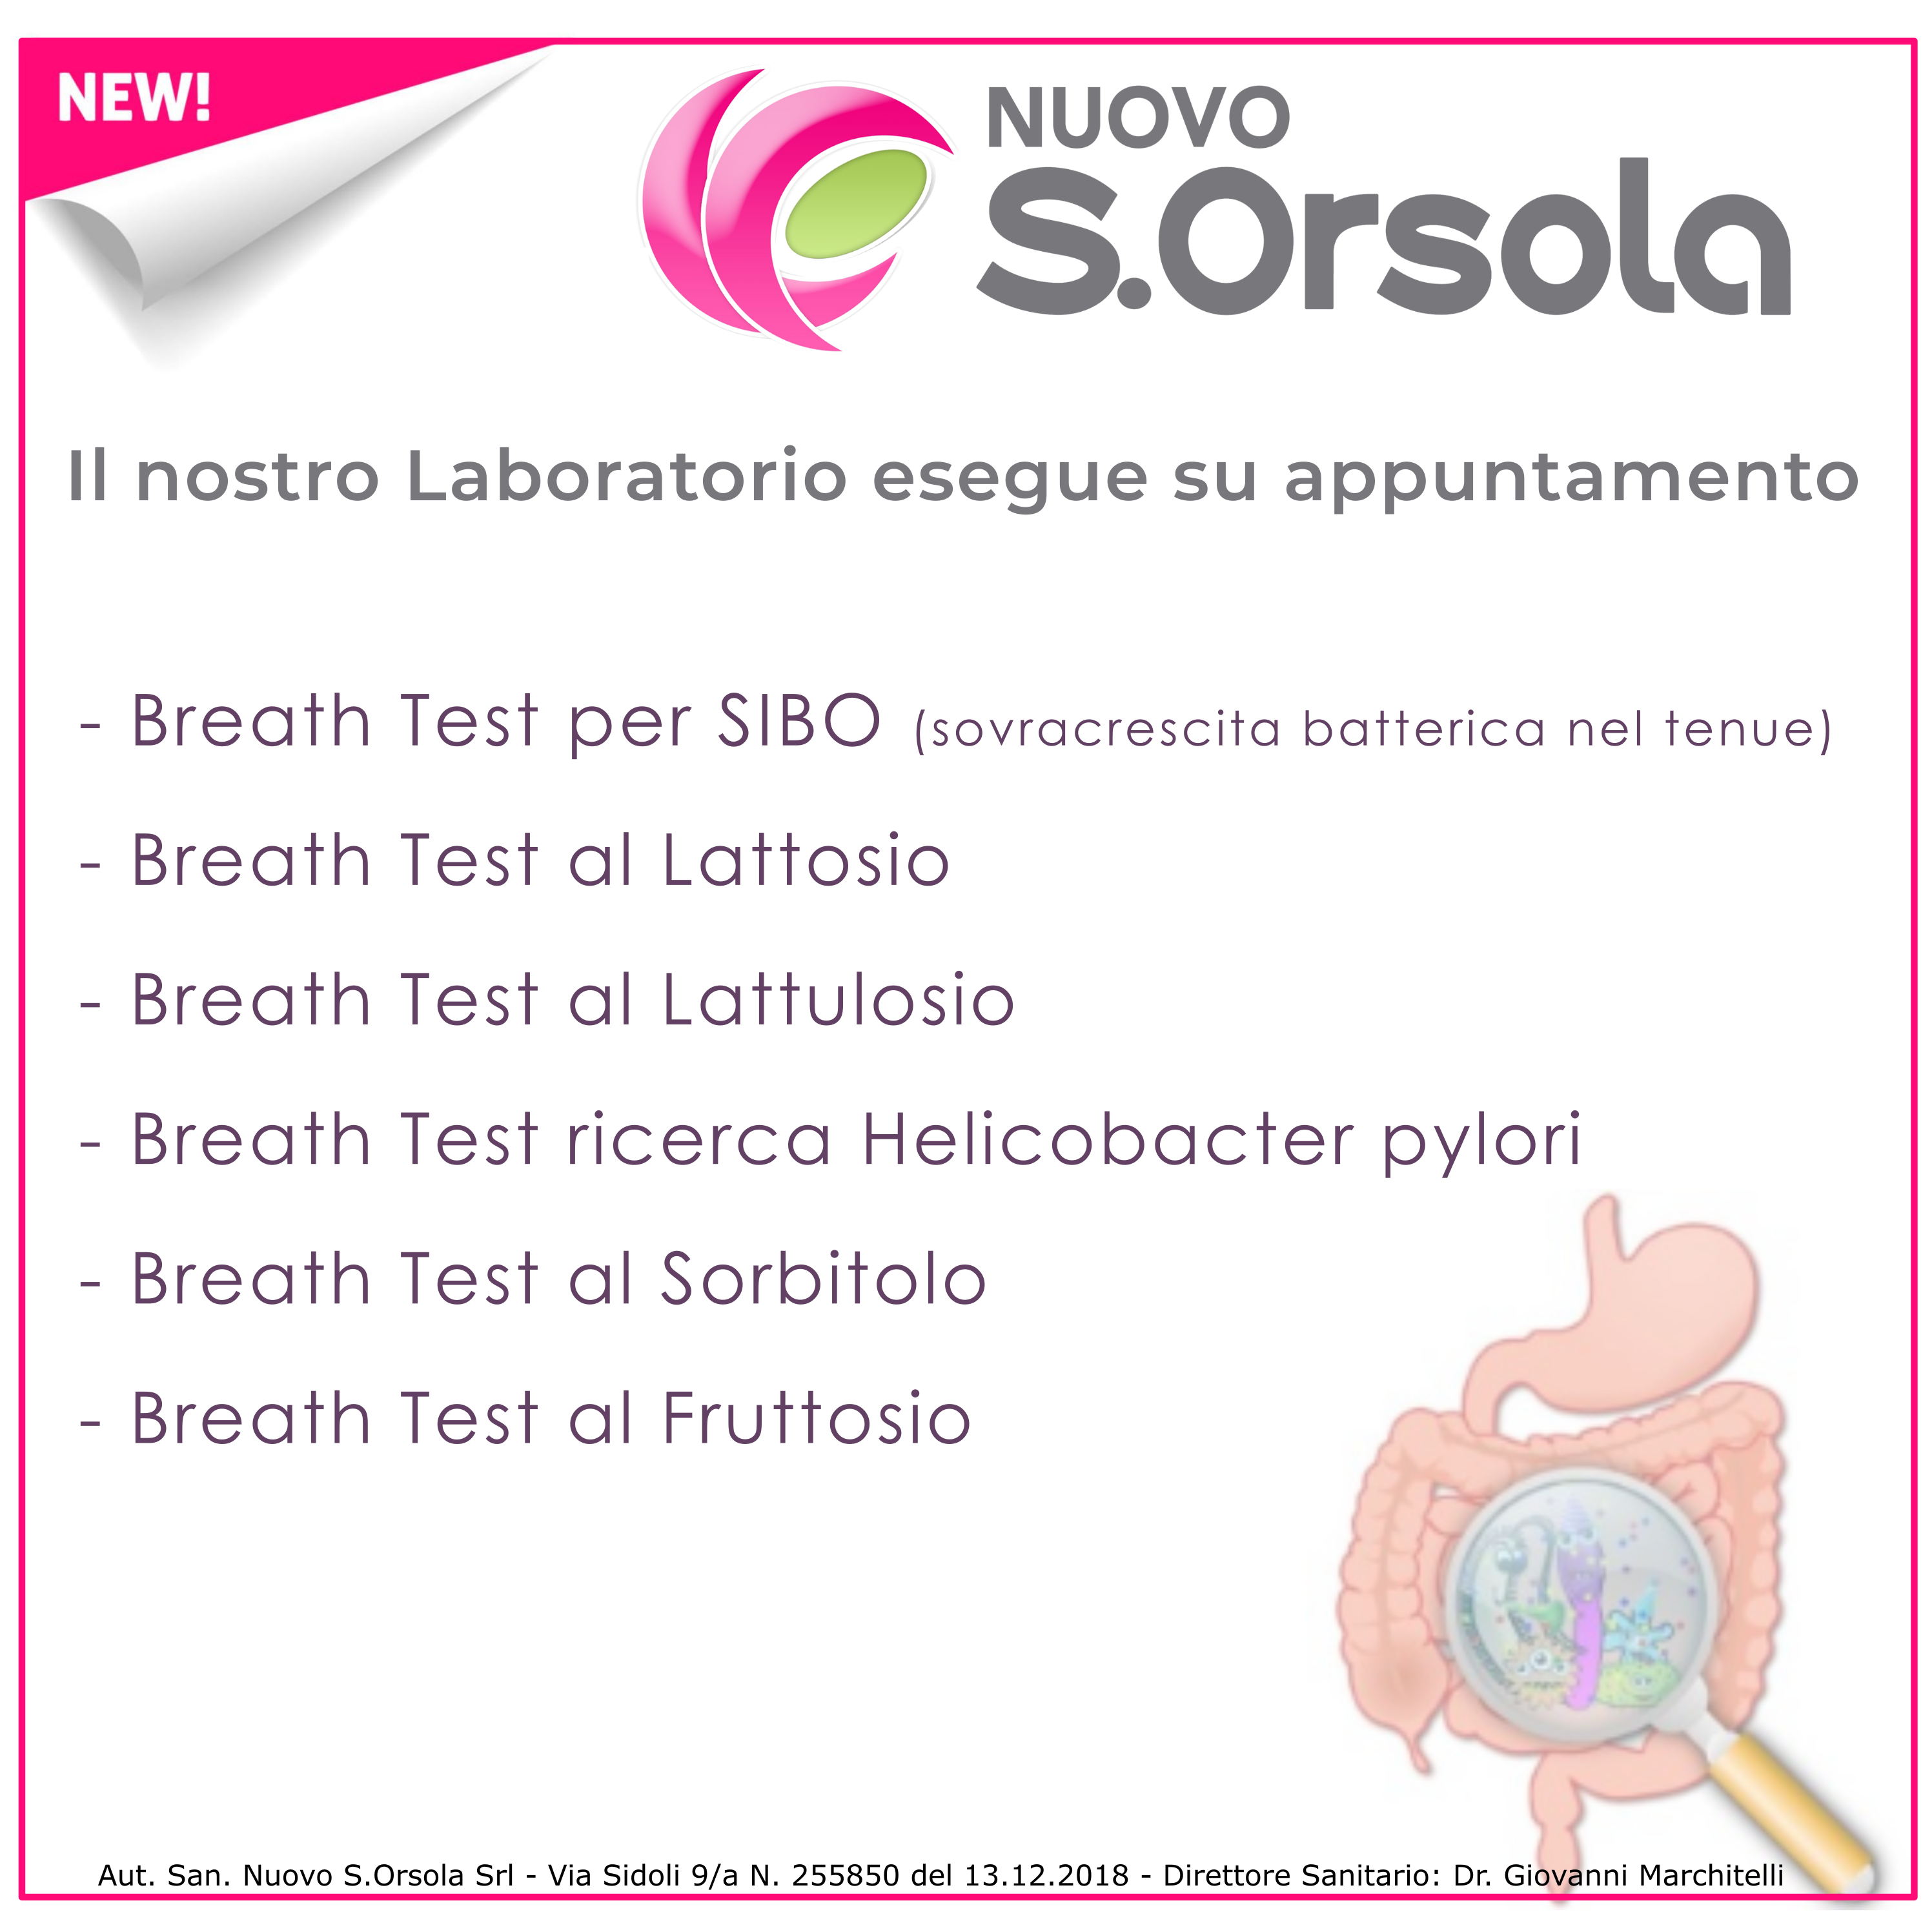 Breath Test SIBO Lattosio Lattulosio Helicobacter pylori Sorbitolo Fruttosio